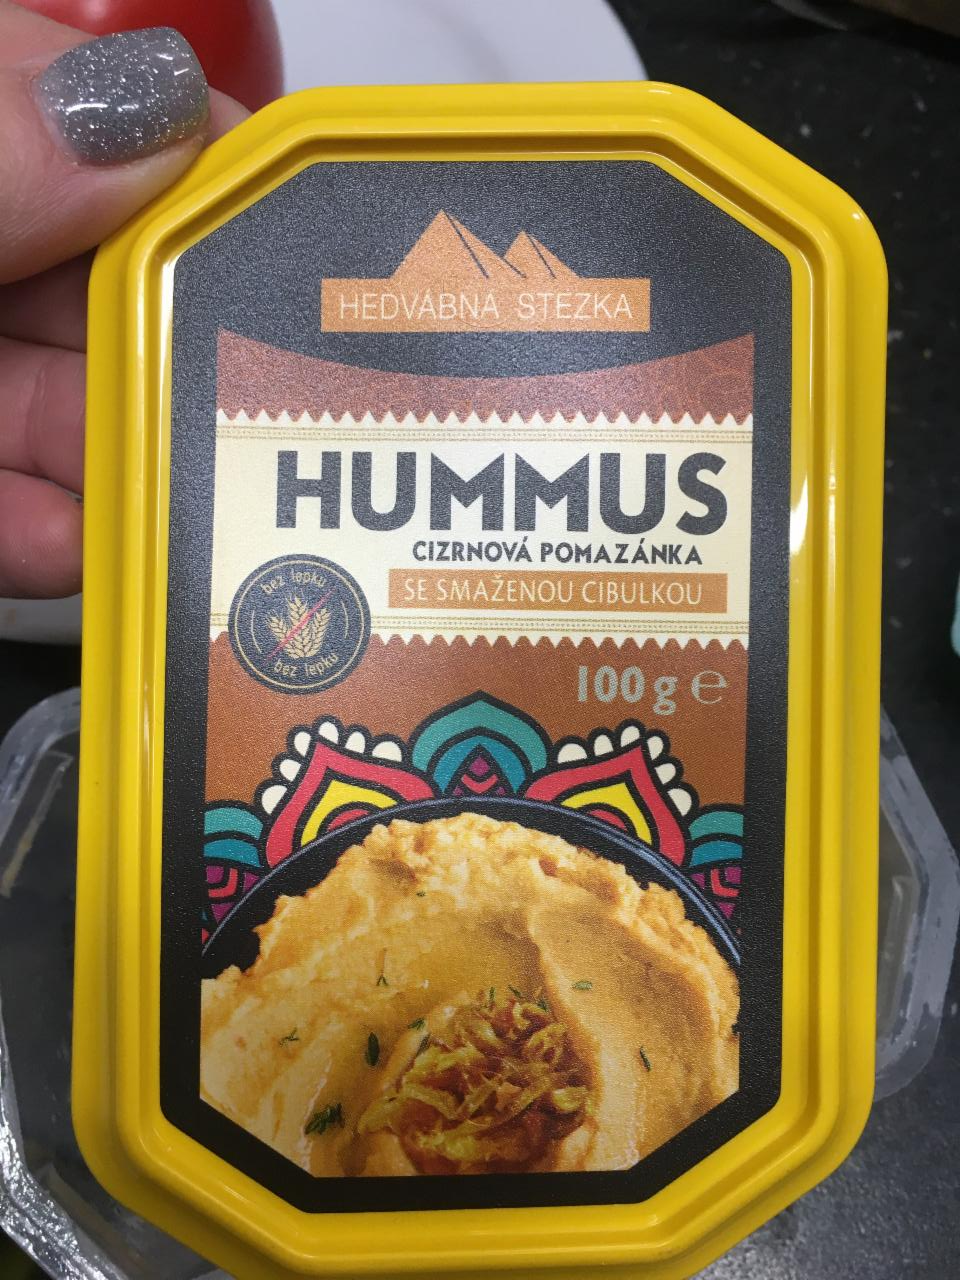 Фото - Hummus cizrnová pomazánka se smaženou cibulkou Hedvábná stezka